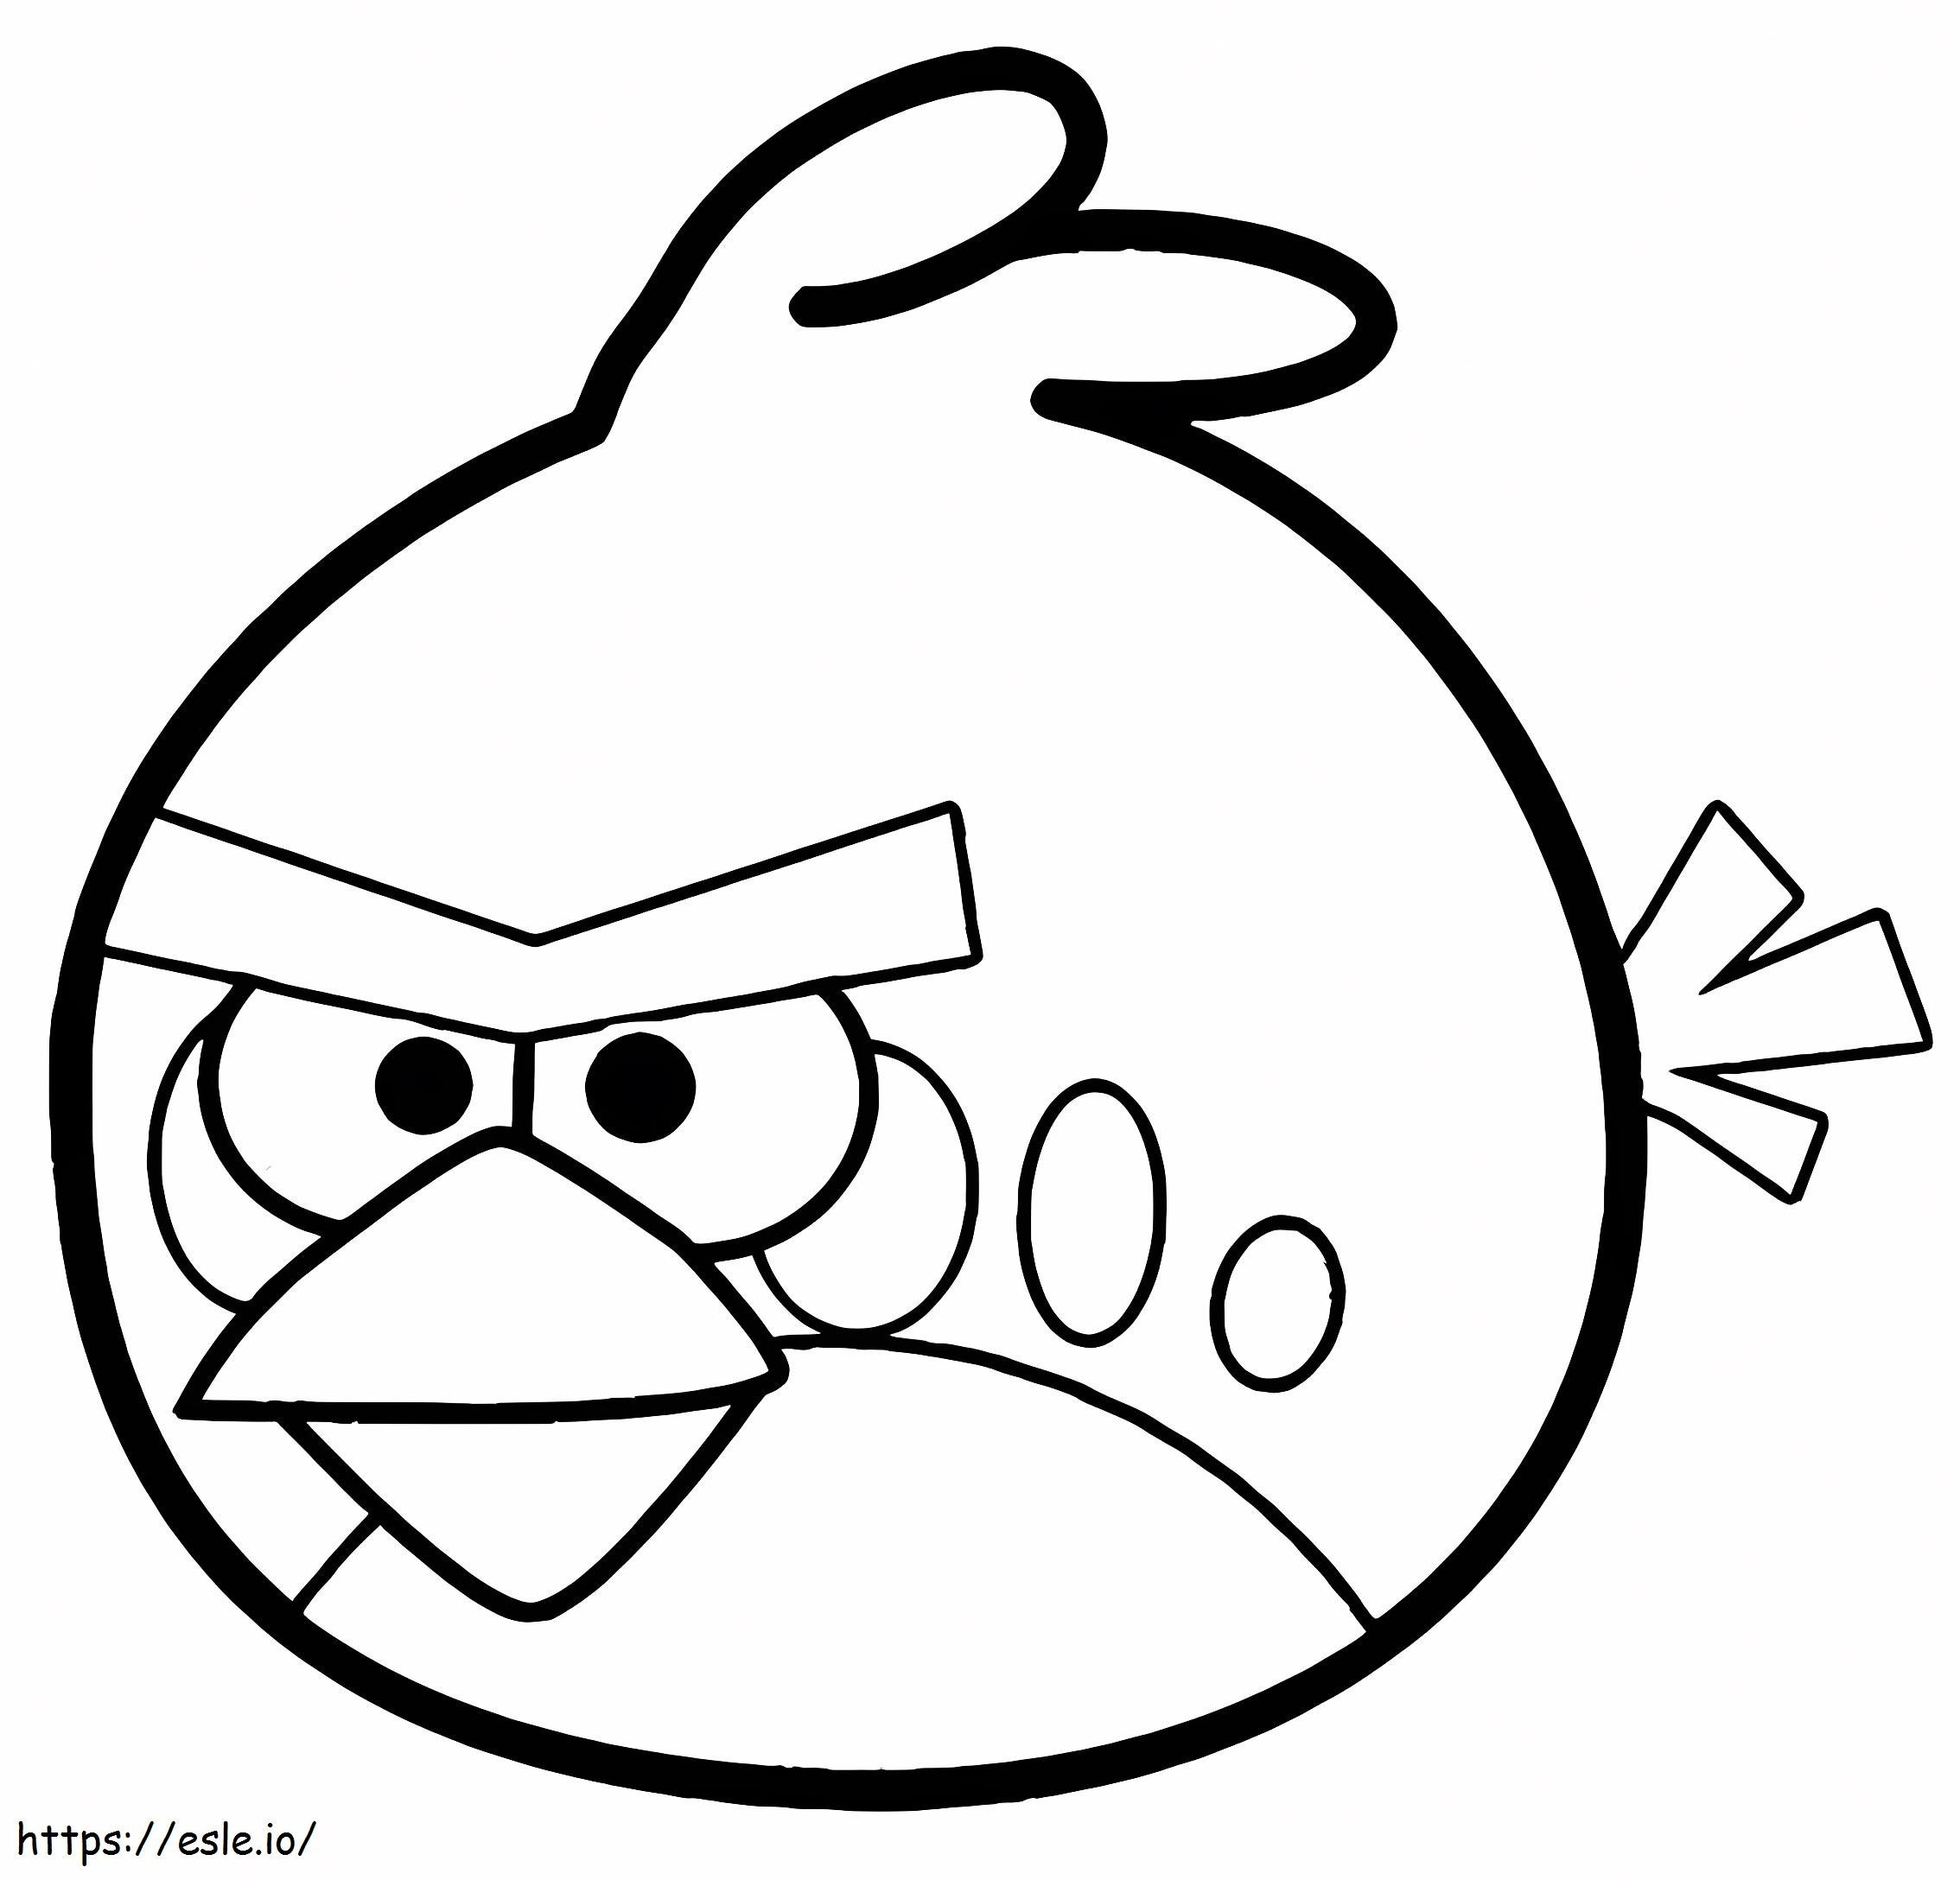 Imponujące Angry Birds kolorowanka